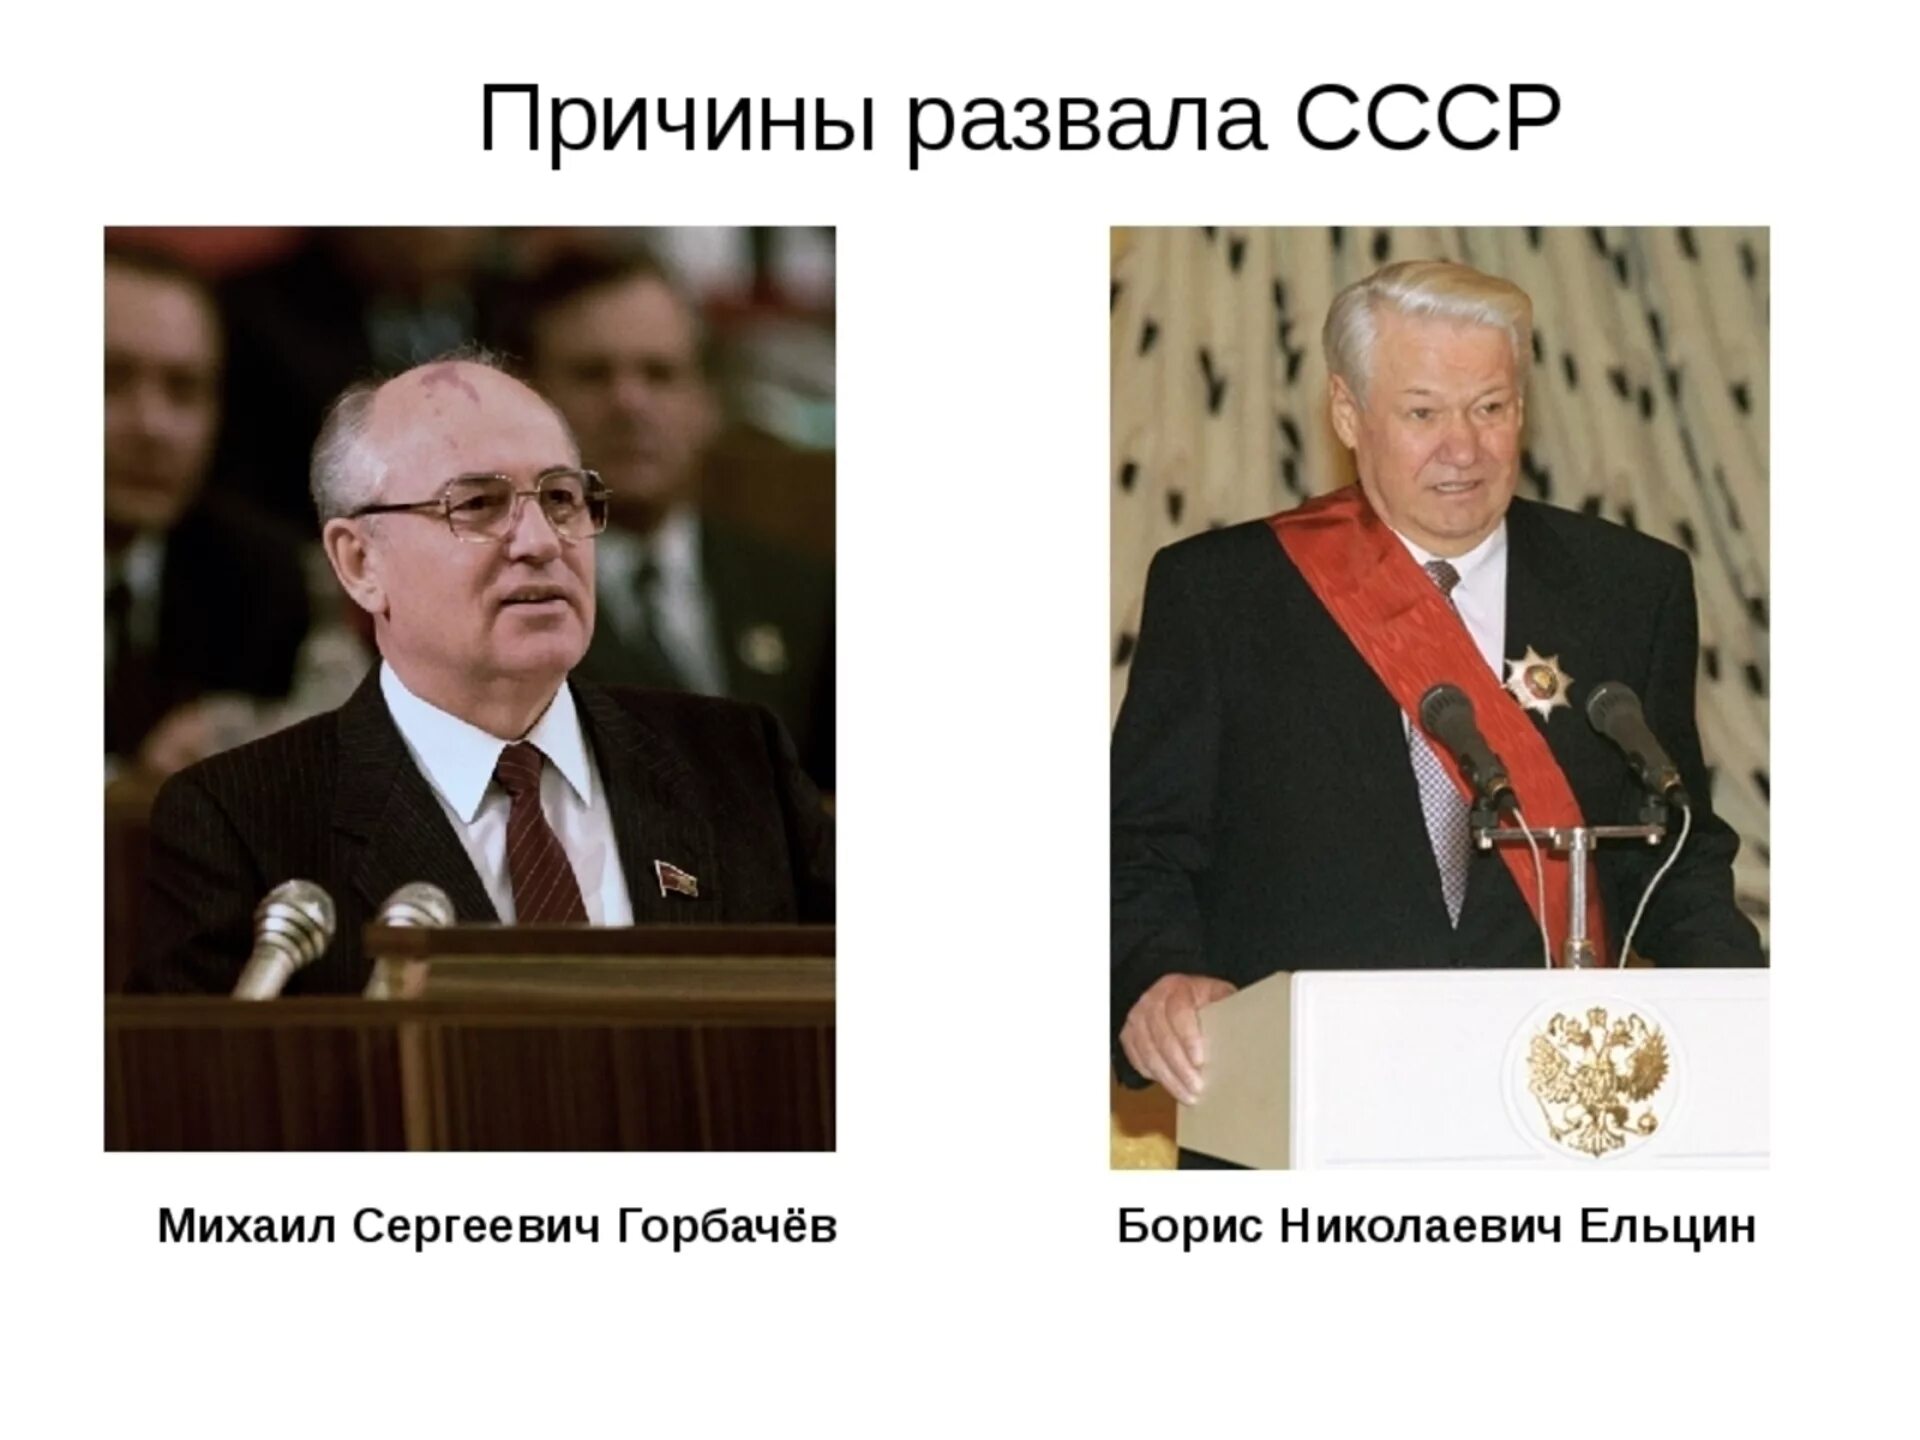 Развалил Советский Союз Ельцин. Горбачев и Ельцин развалили СССР.